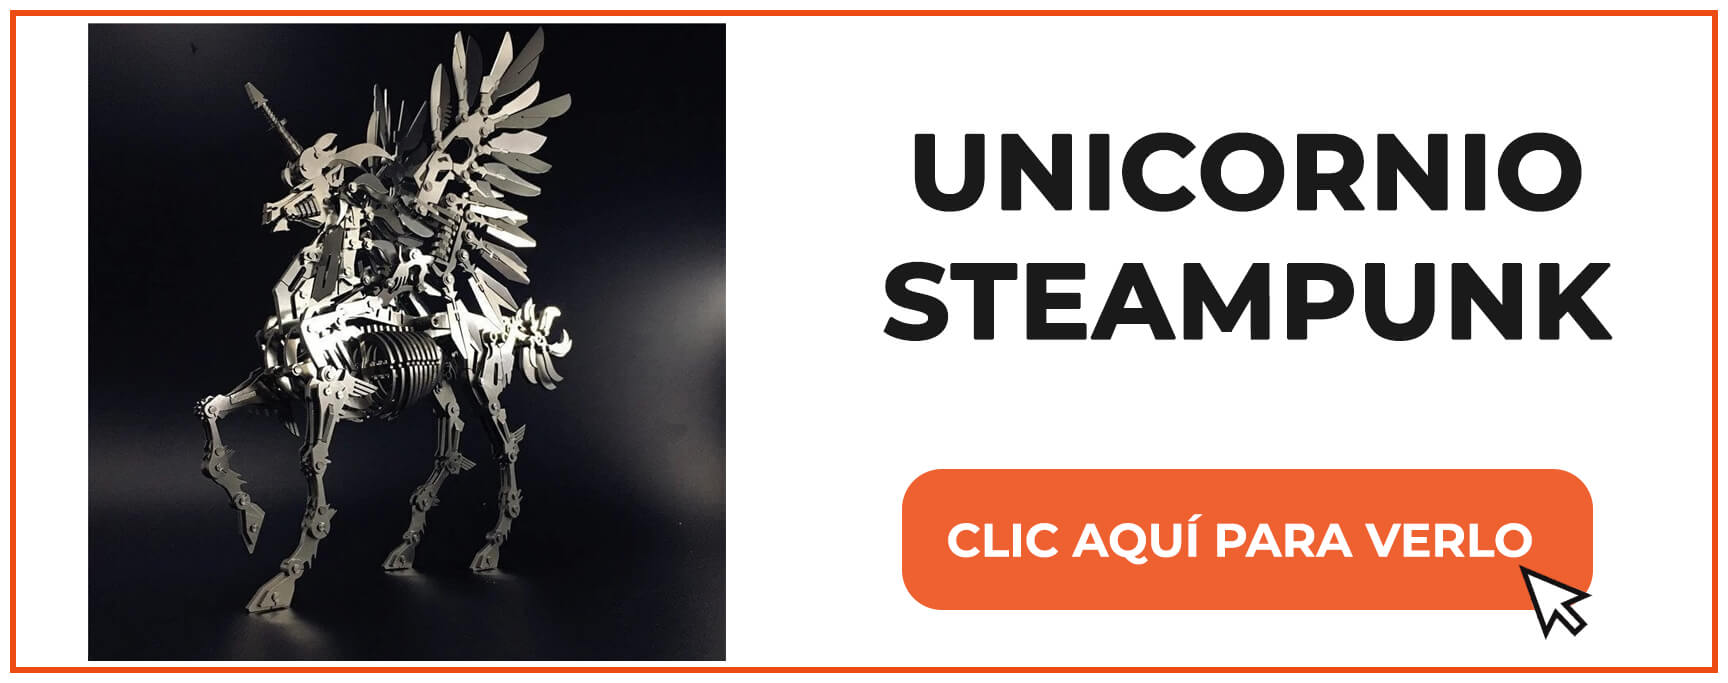 unicornio steampunk